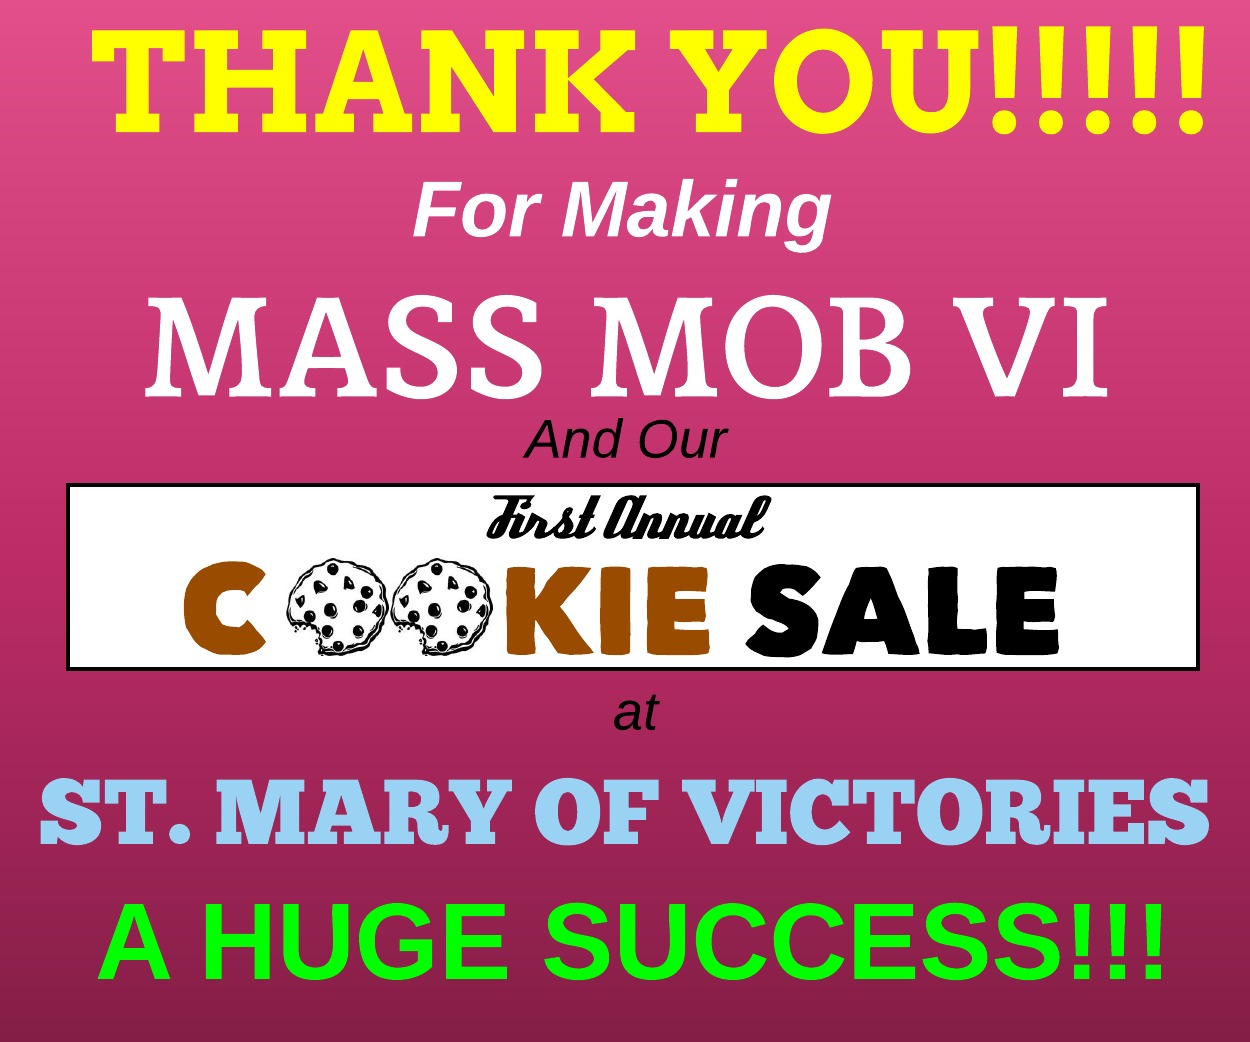 SMOV_-_Mass_Mob_Thank_You.jpeg - 188.81 kB